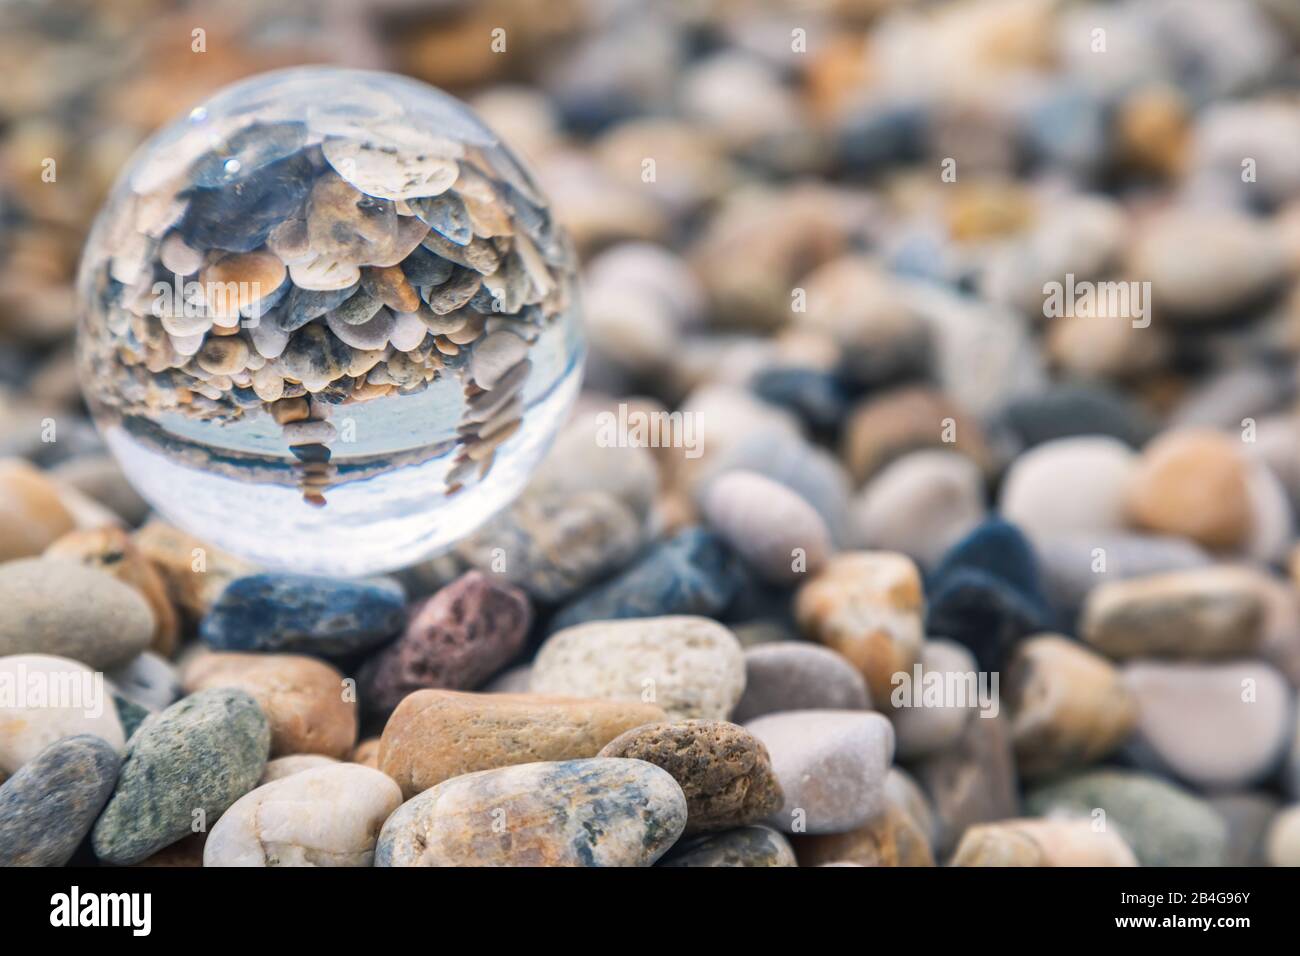 Pile de galets reflétés dans une boule de cristal, plage de Baska, île de Krk, baie de Kvarner, comté de Primorje-Gorski Kotar, Croatie Banque D'Images